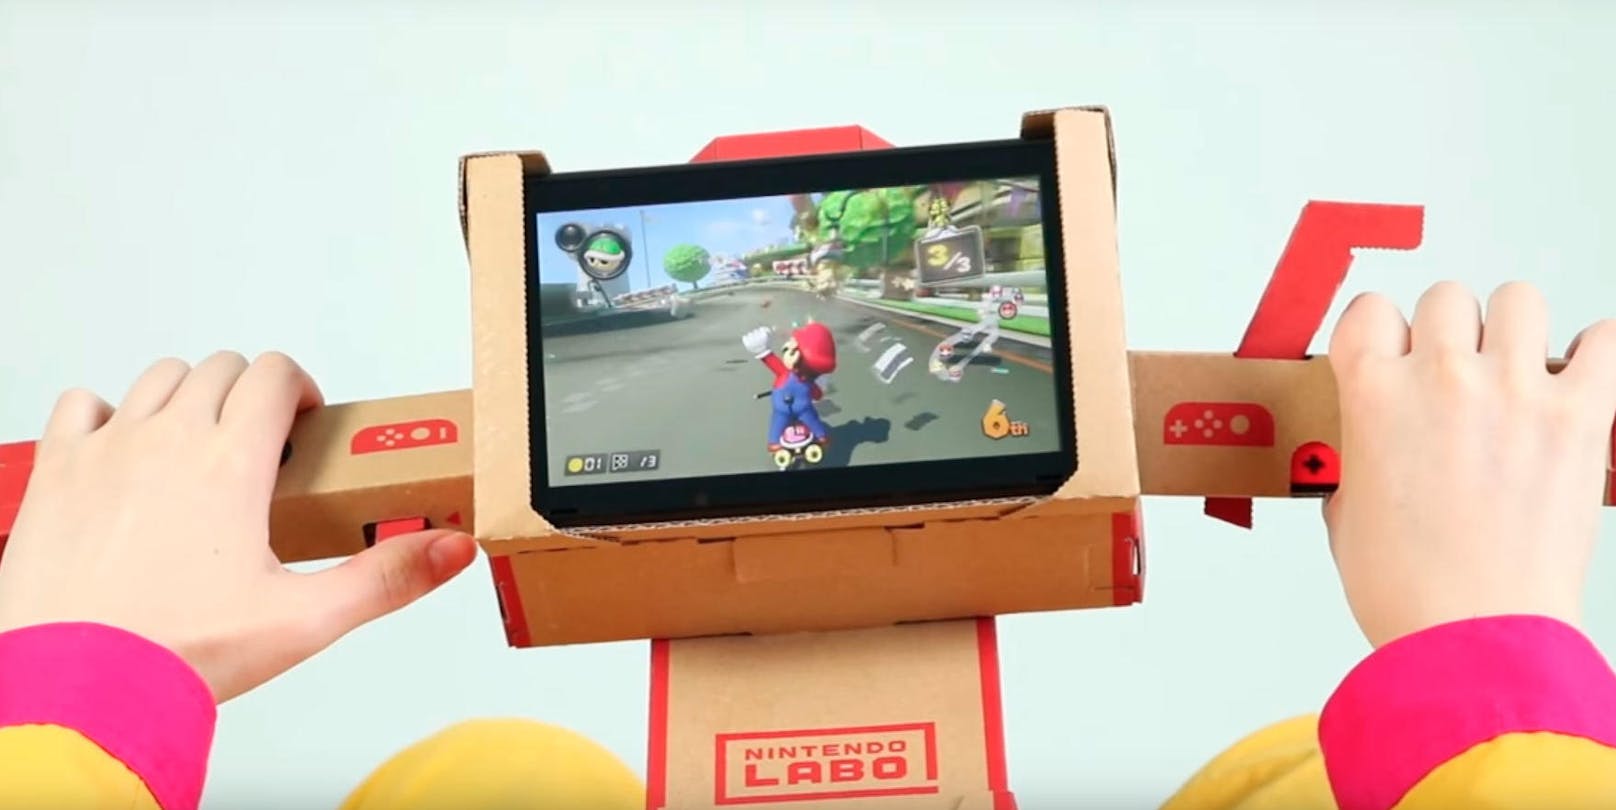 <b>26. Juni 2018:</b> Mario Kart 8 Deluxe für Nintendo Switch kann ab sofort auch mit Pappkarton gesteuert werden. Nintendo hat das Spiel nämlich mit einem Update versehen, das den Mororradlenker des Nintendo Labo Multi-Kits (im Handel um ca. 70 Euro erhältlich) mit dem Fun-Racer kompatibel macht. Die Joy-Con-Controller werden links und rechts in die Lenkstange gesteckt, der Switch-Bildschirm in die Mitte eingesetzt und los gehts!